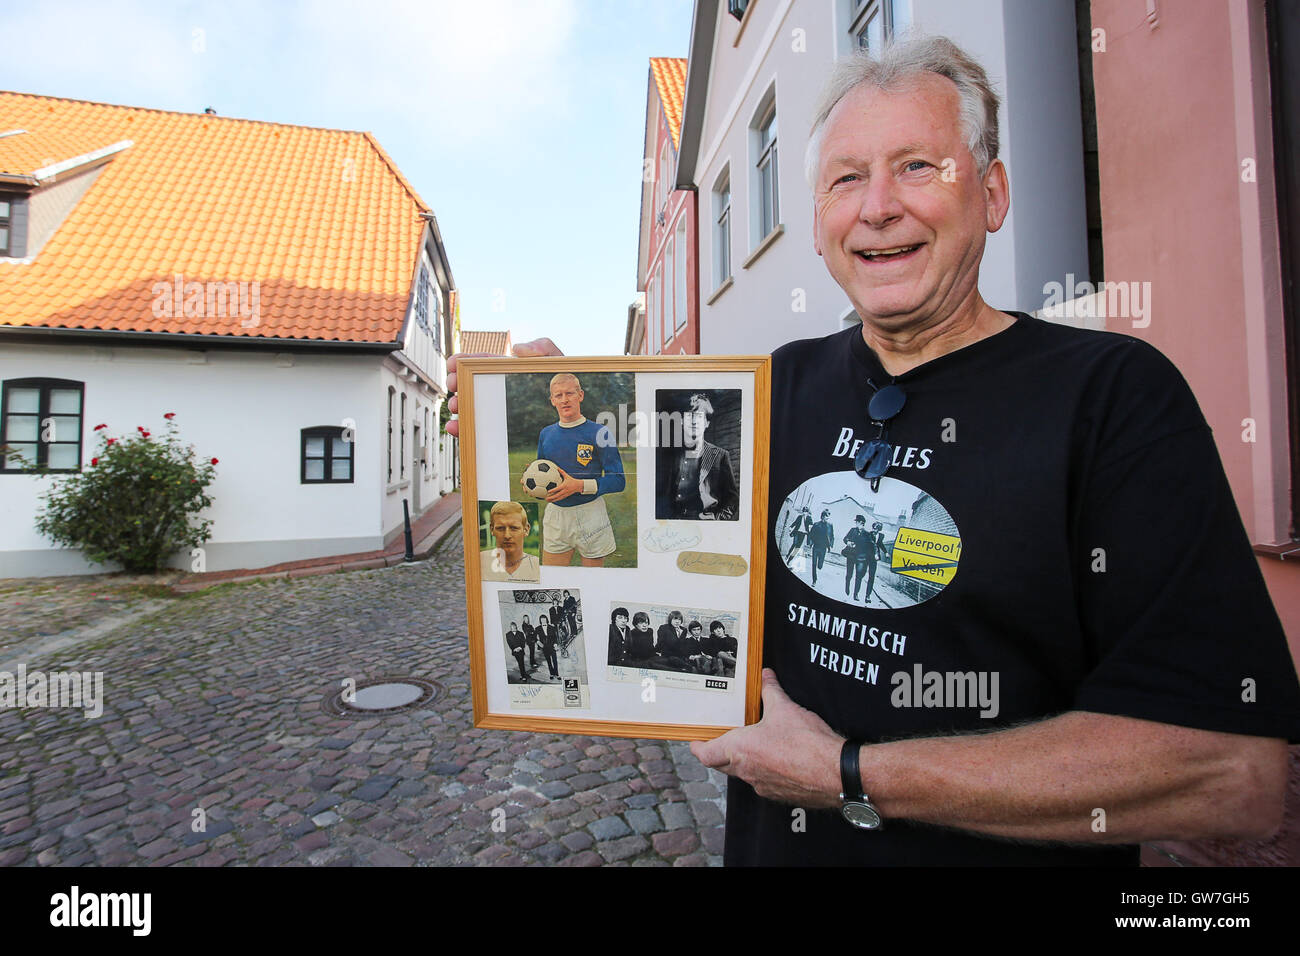 Verden, Allemagne. Sep 9, 2016. Harry Schwertner, co-fondateur de The Beatles groupe de réguliers à Verden, pose avec un cadre photo avec des autographes et des photos dont l'un de John Lennon dans la vieille ville de Passau, Allemagne, le 9 septembre 2016. Plusieurs scènes de la déplacer 'Comment j'ai gagné la guerre" avec John Lennon ont été tournées dans la ville en septembre 1966. La chambre à l'arrière-plan (l) peut être vu dans le film. Photo : Focke Strangmann/dpa/Alamy Live News Banque D'Images